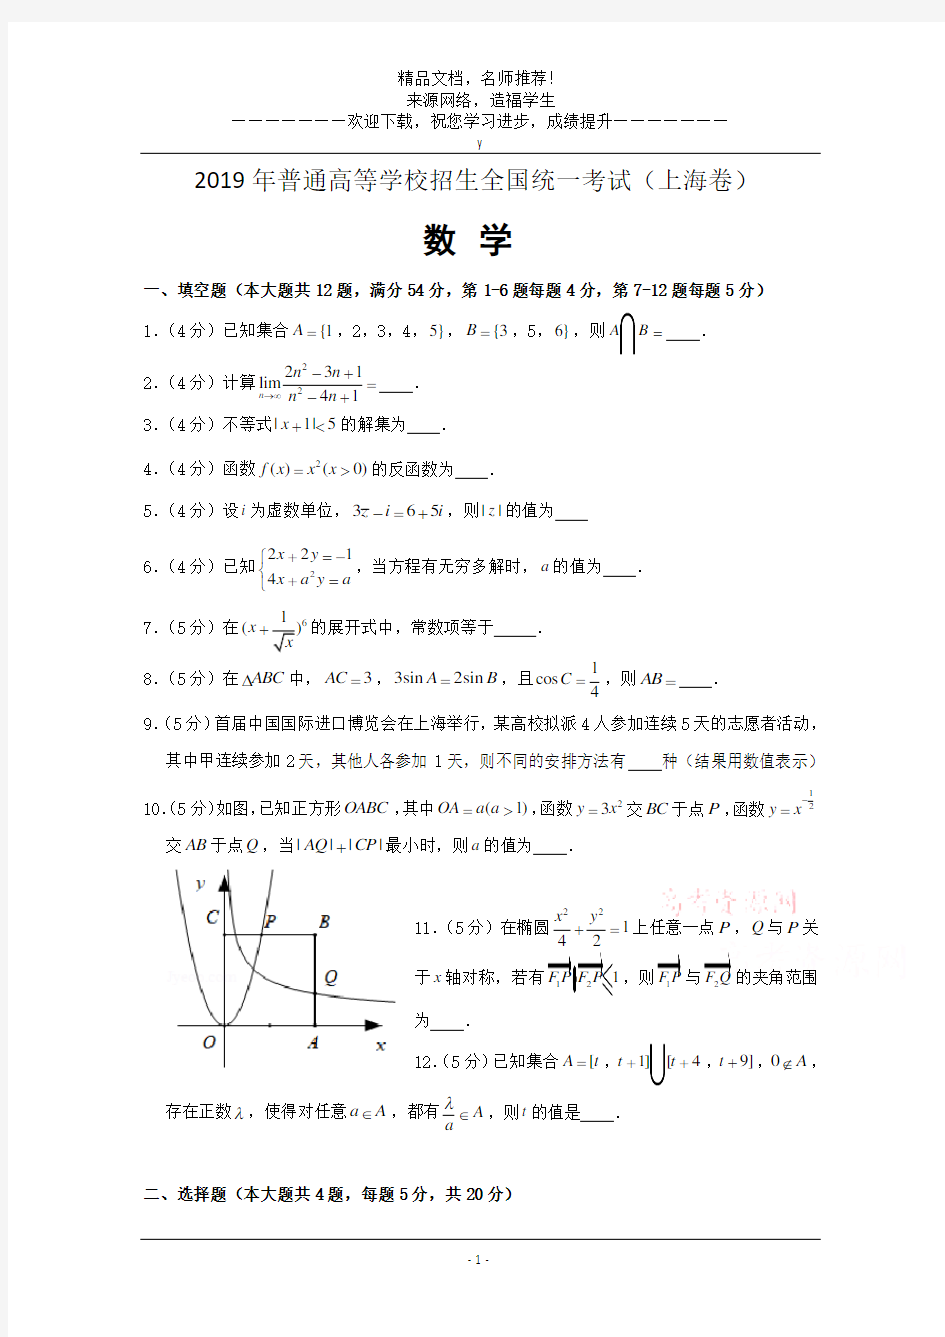 2019年高考试题——文科数学(上海卷)原卷版